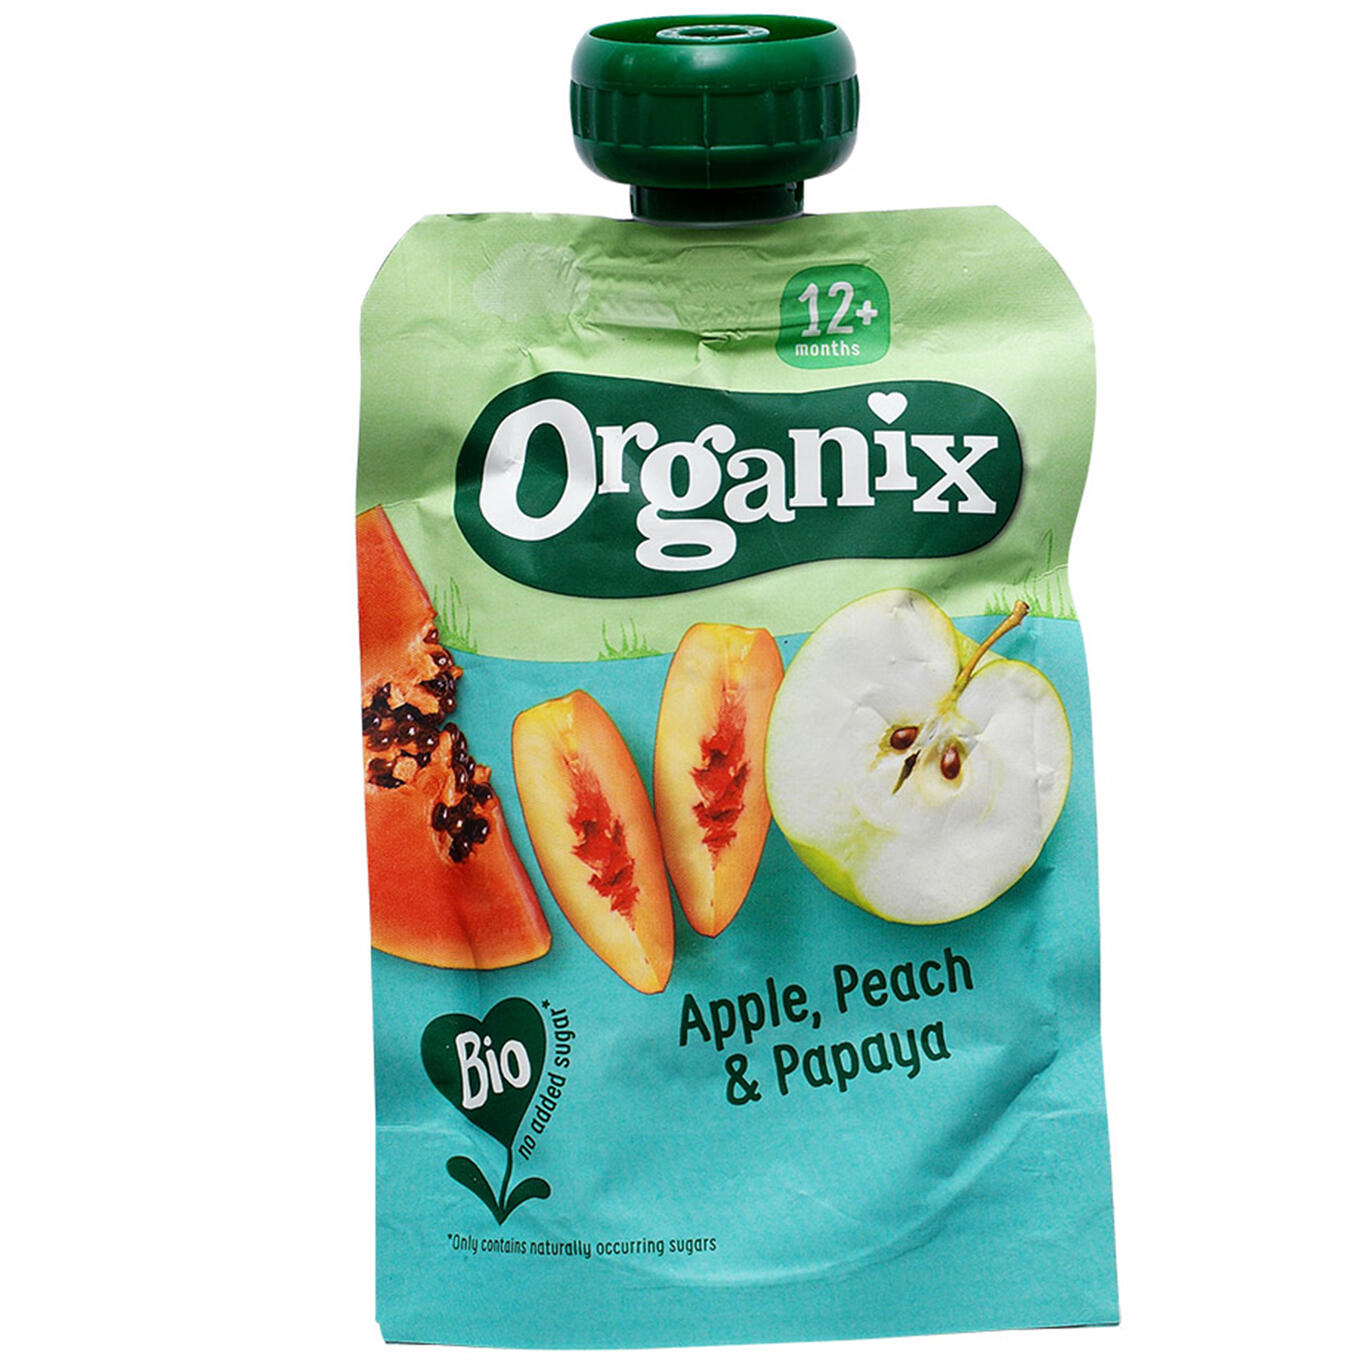 Apple, Peach & Papaya Organix